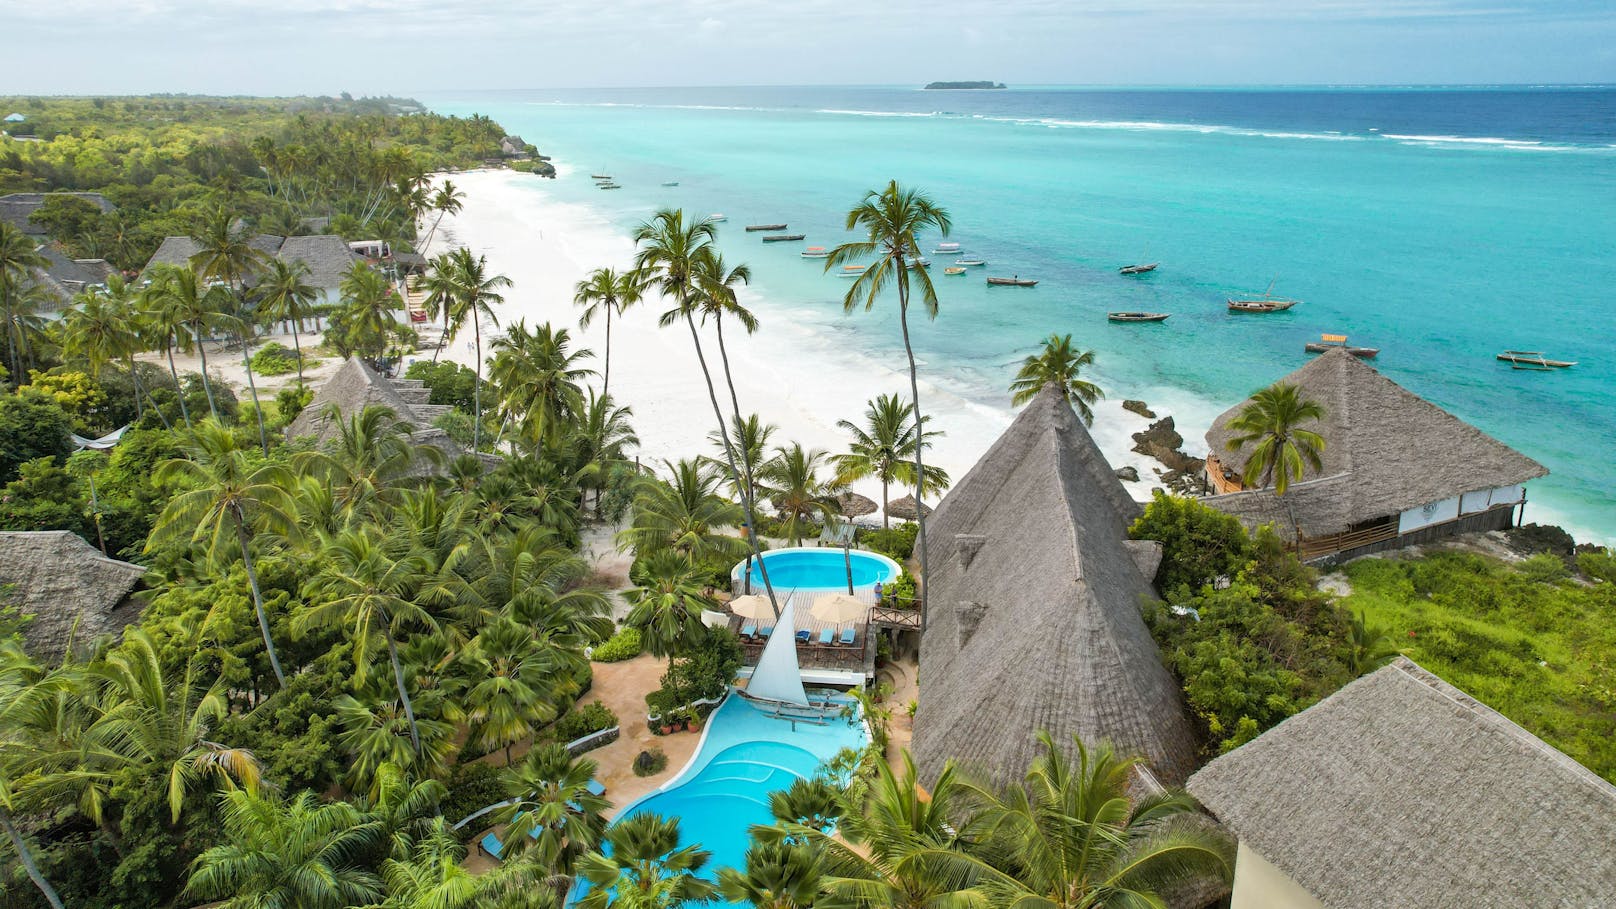 Urlaub im Inselparadies Zanzibar zu gewinnen